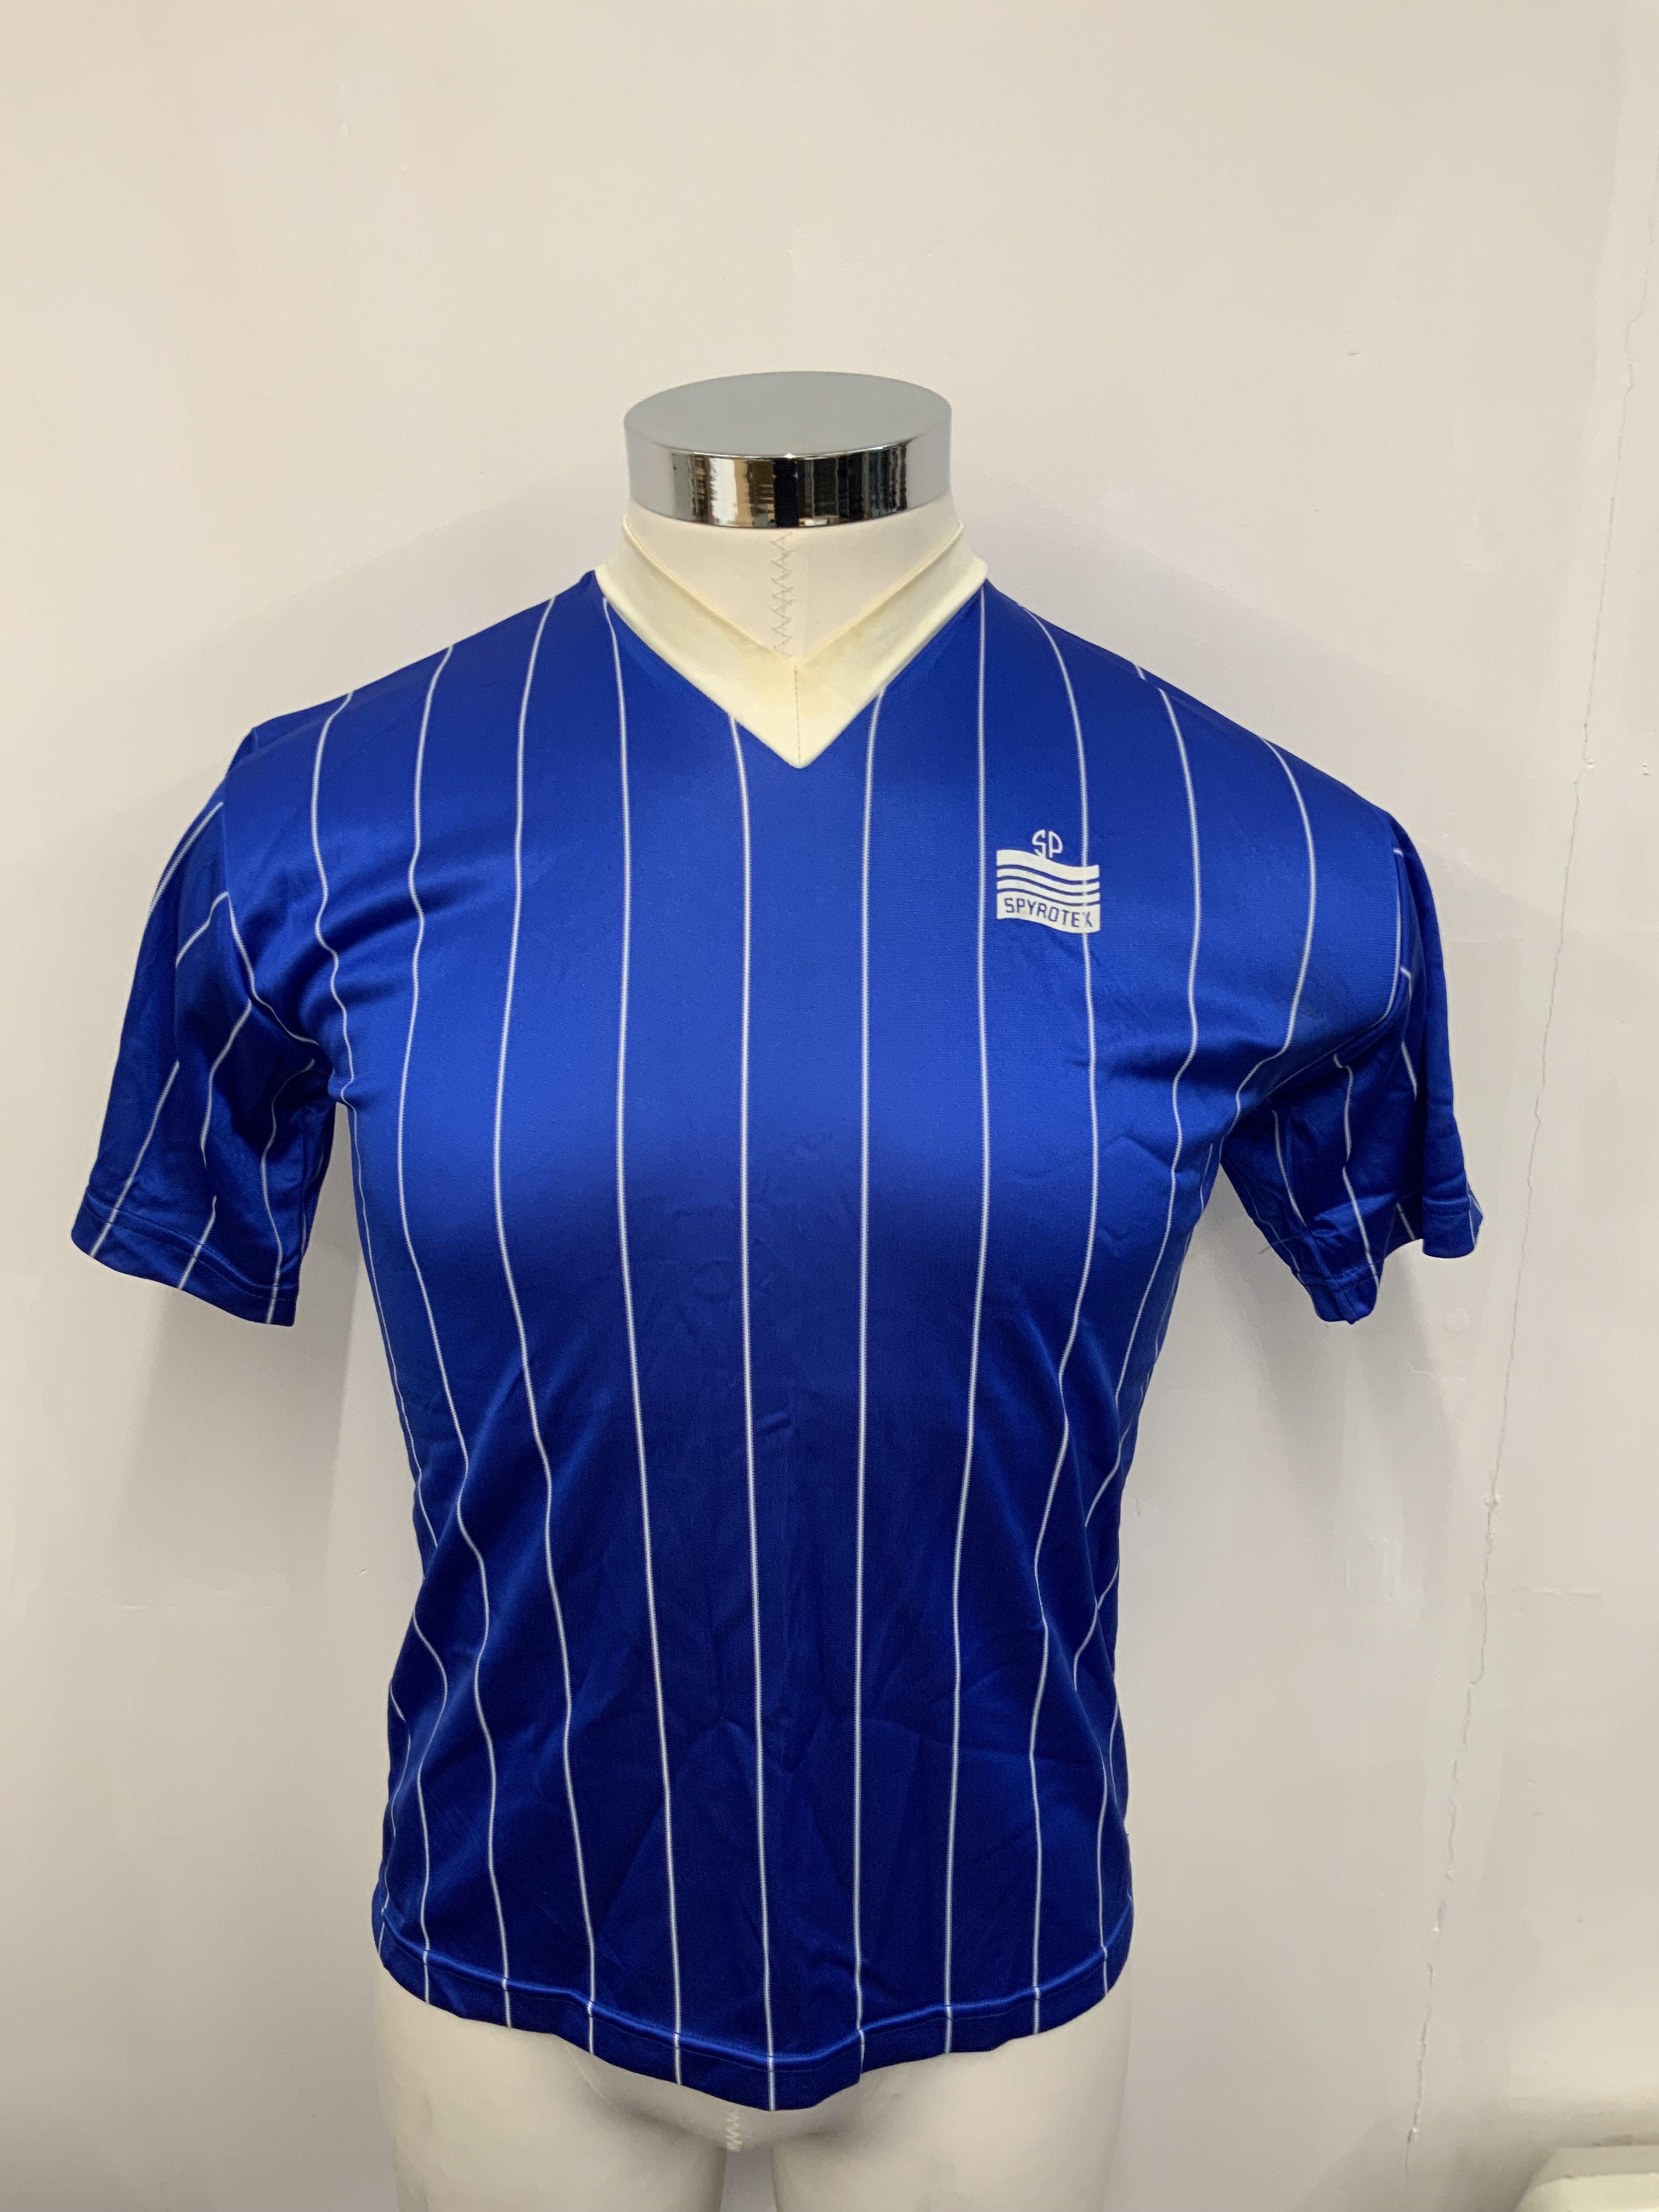 1982 Limassol Match Worn Football Shirt: Blue and